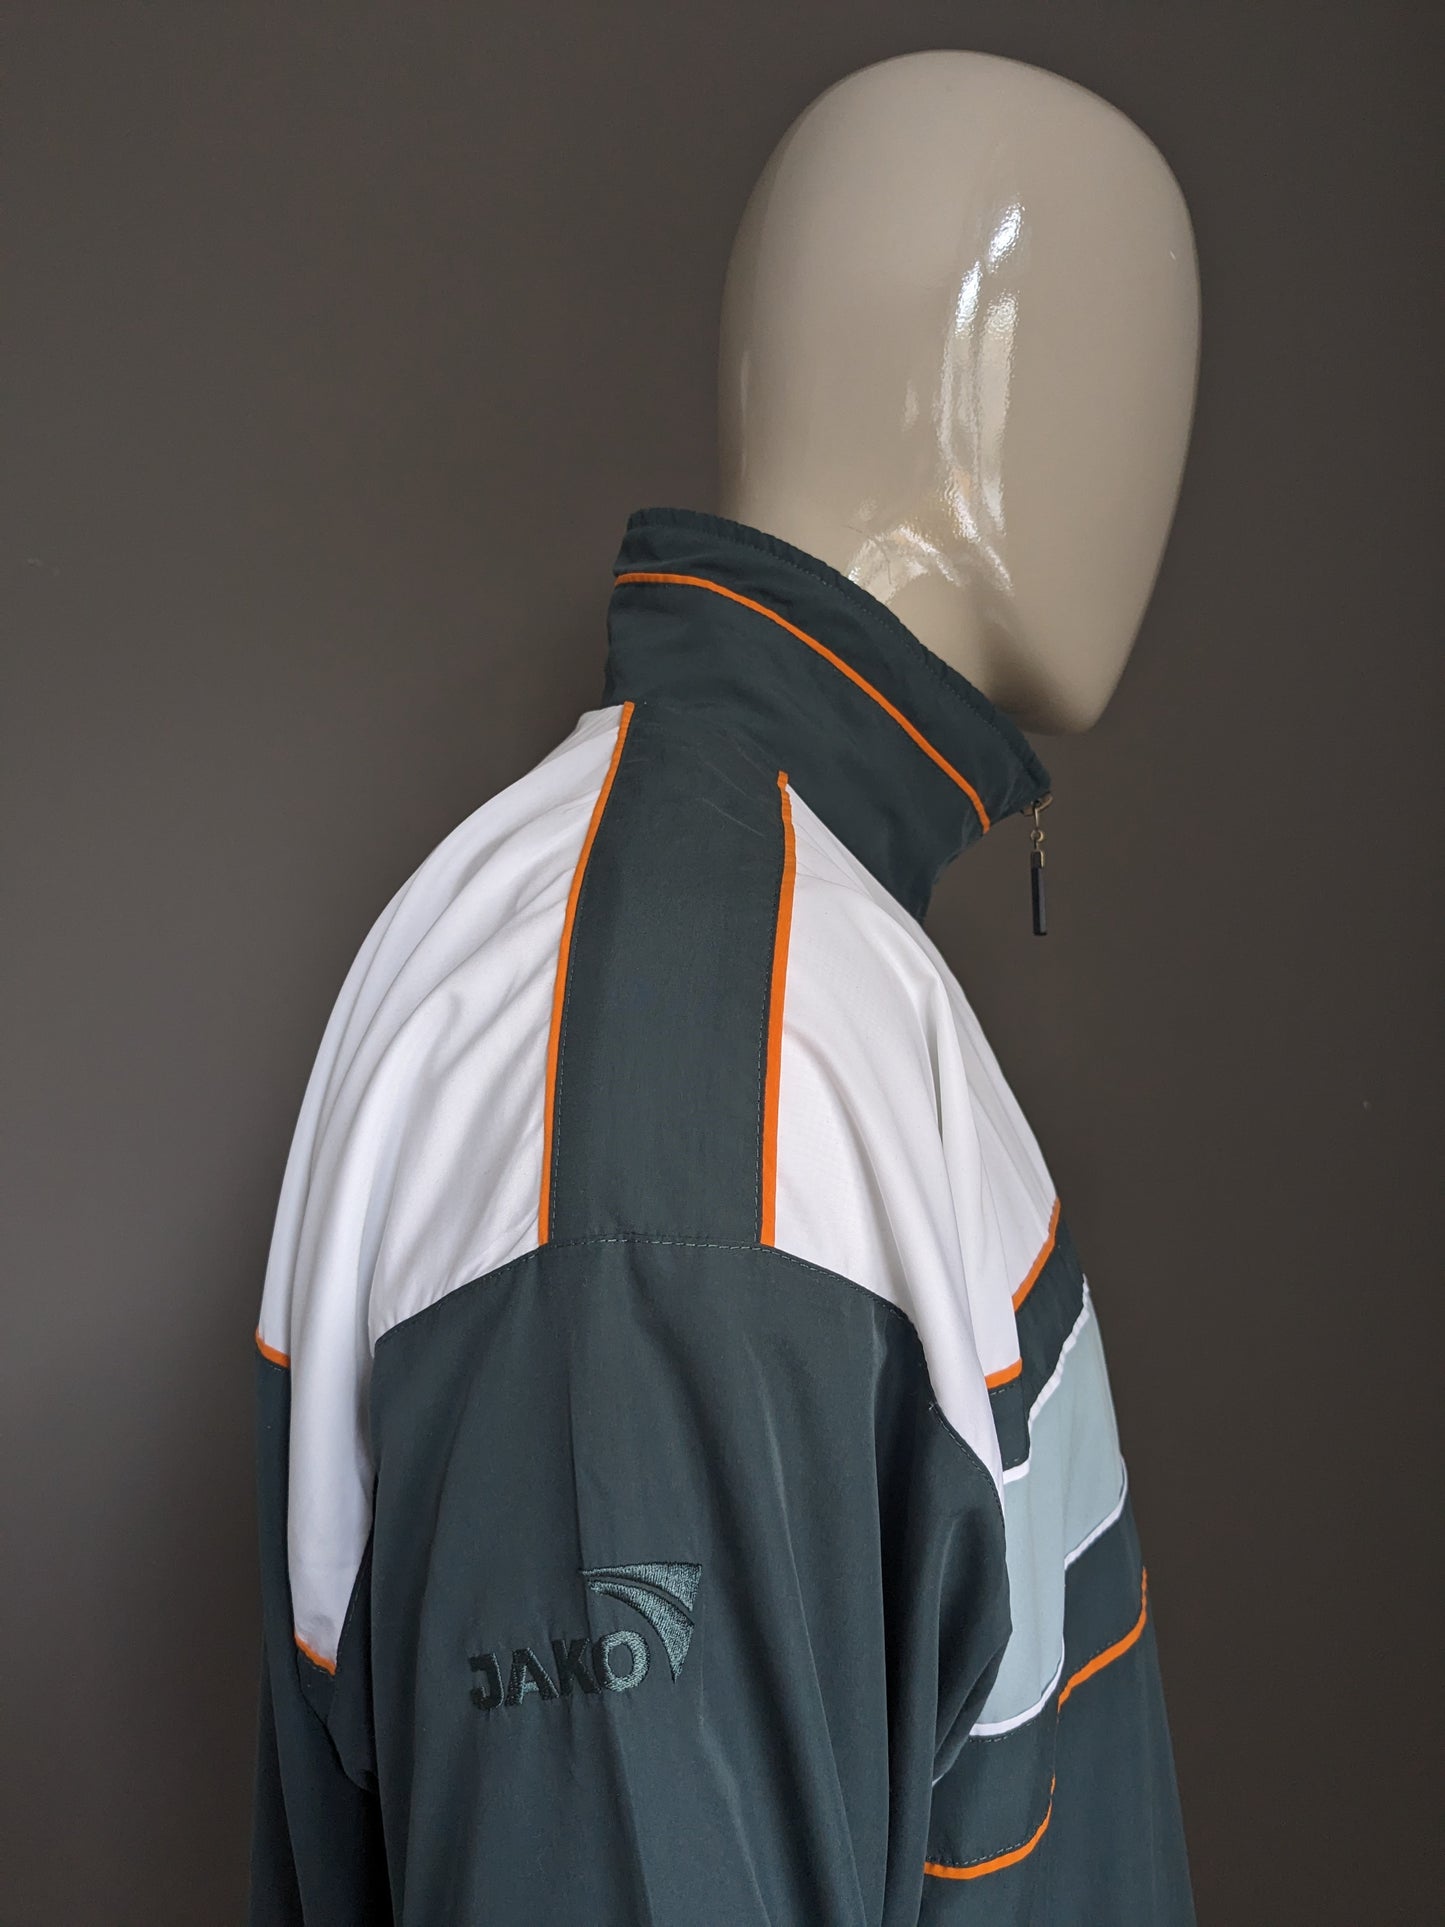 Jako Sport Jack vintage anni '80-90. Colorato bianco arancione verde. Dimensione 2xl / xxl.